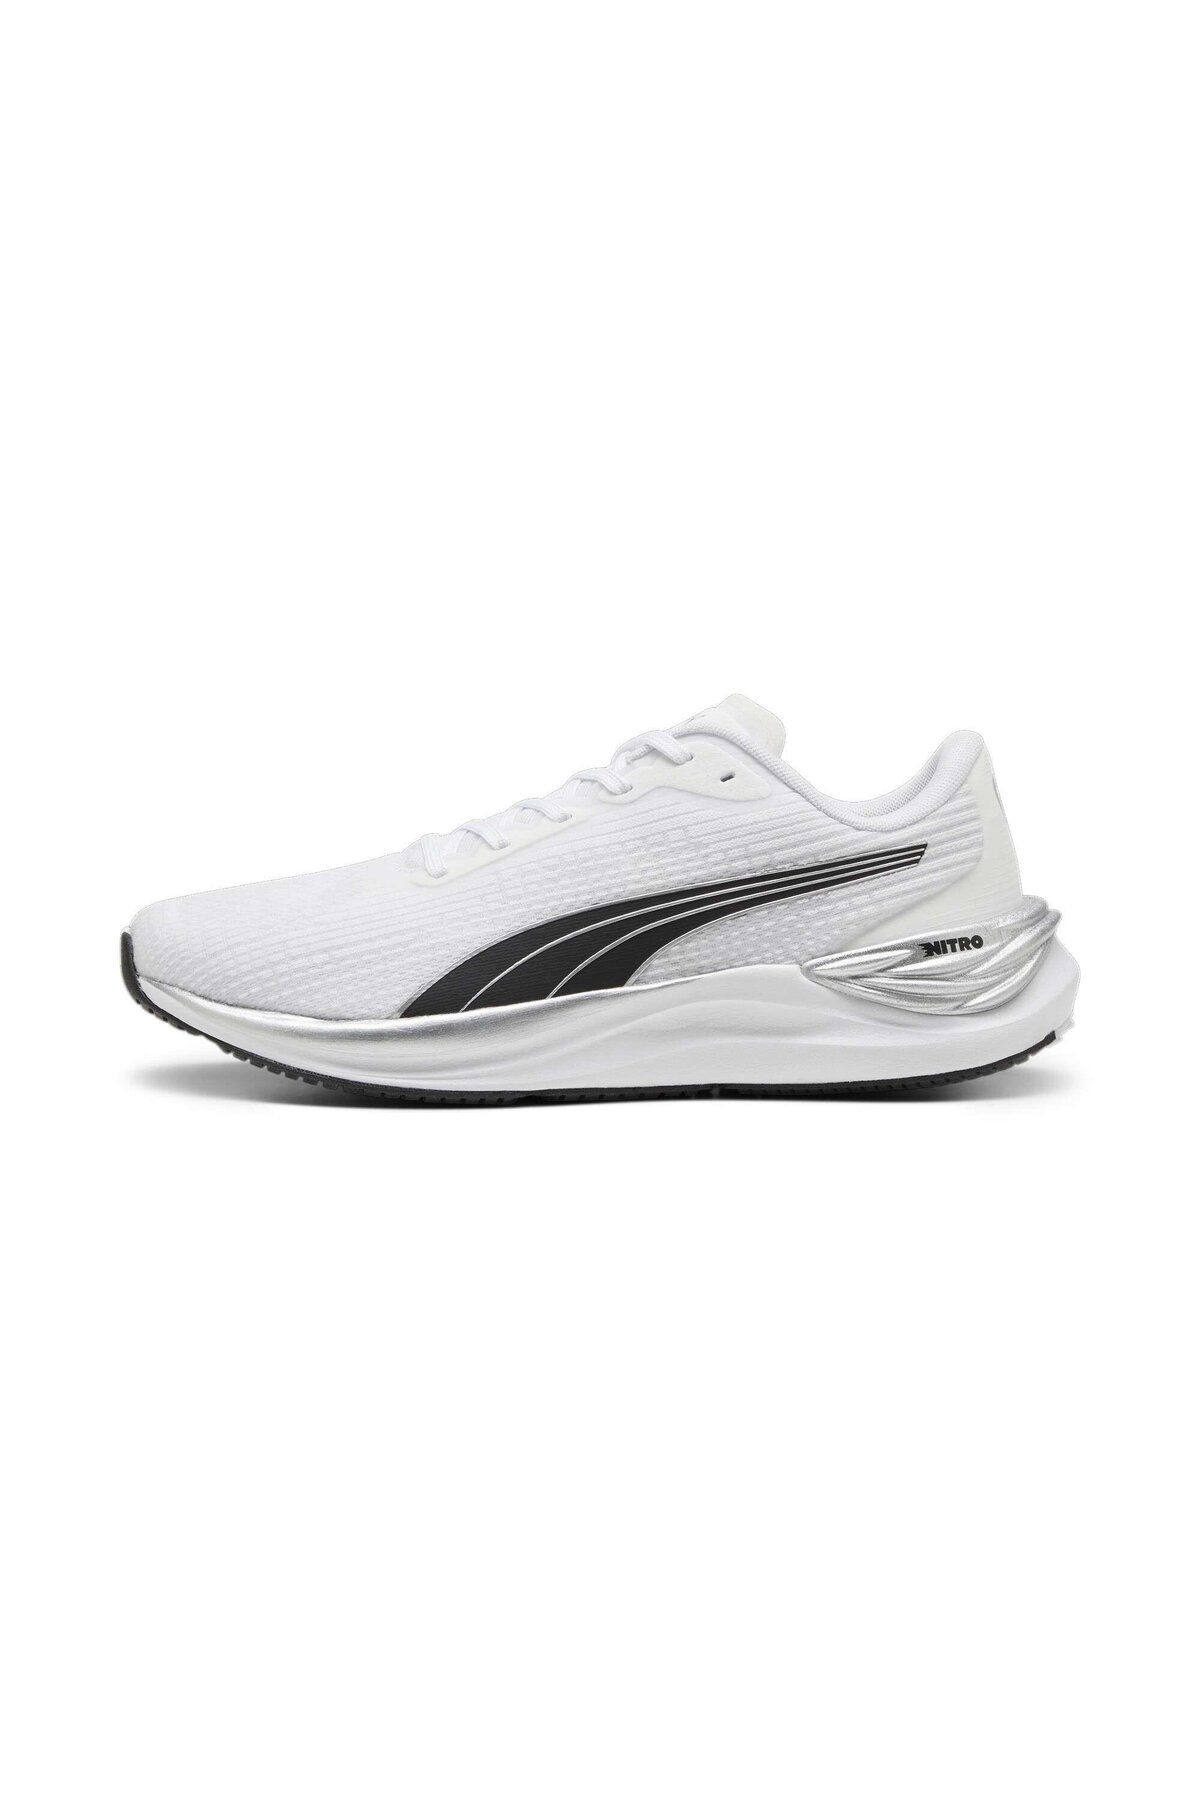 Puma Electrify NITRO  3 Beyaz Erkek Yürüyüş ve Koşu Ayakkabısı